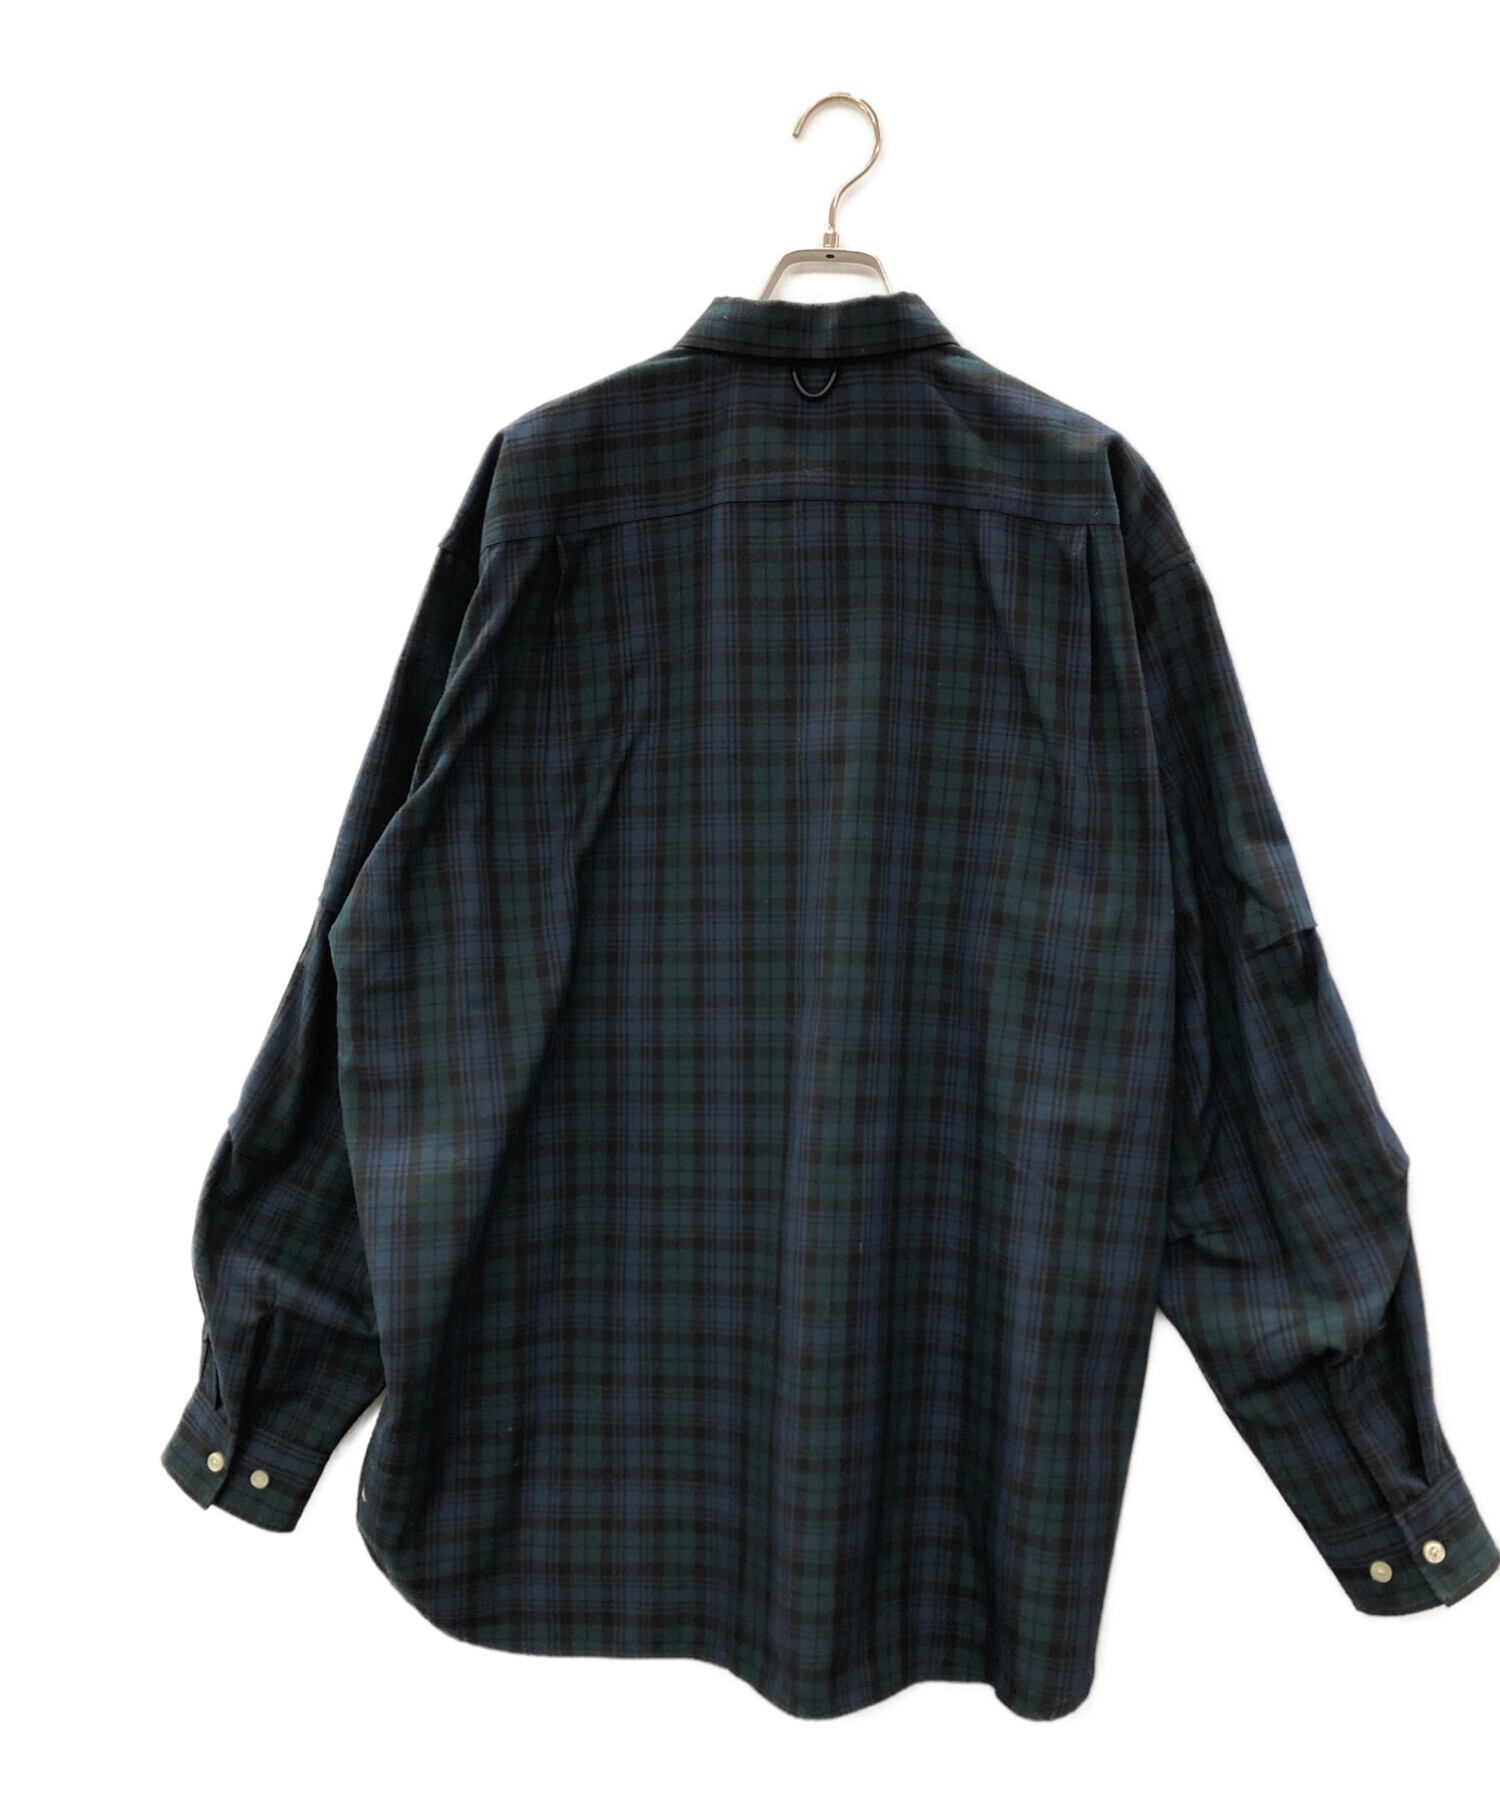 DAIWA PIER39 (ダイワ ピア39) テックフランネルワーカーズシャツ ブラックウォッチ サイズ:L